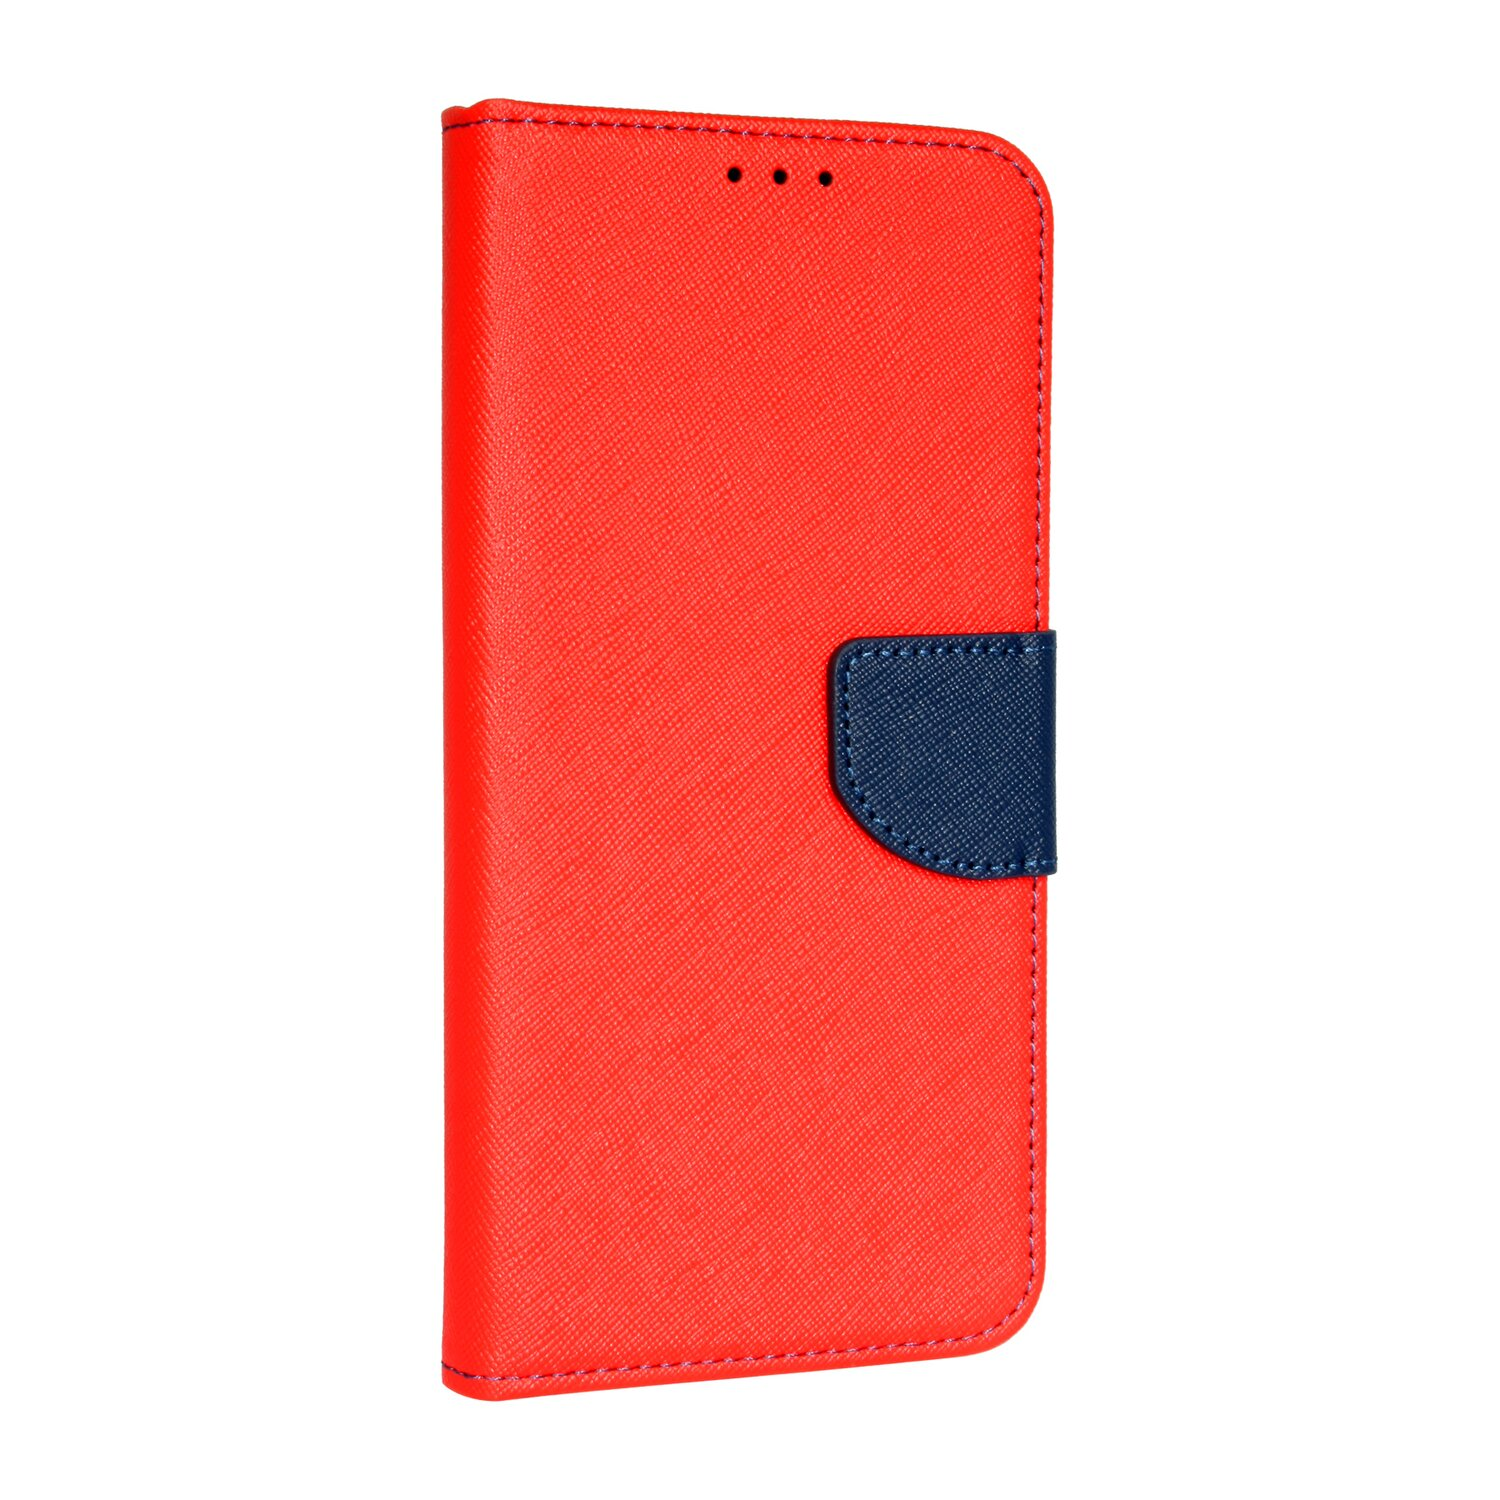 COFI Buch Tasche, Bookcover, Xiaomi, Rot-Blau 10 Pro, Redmi Note